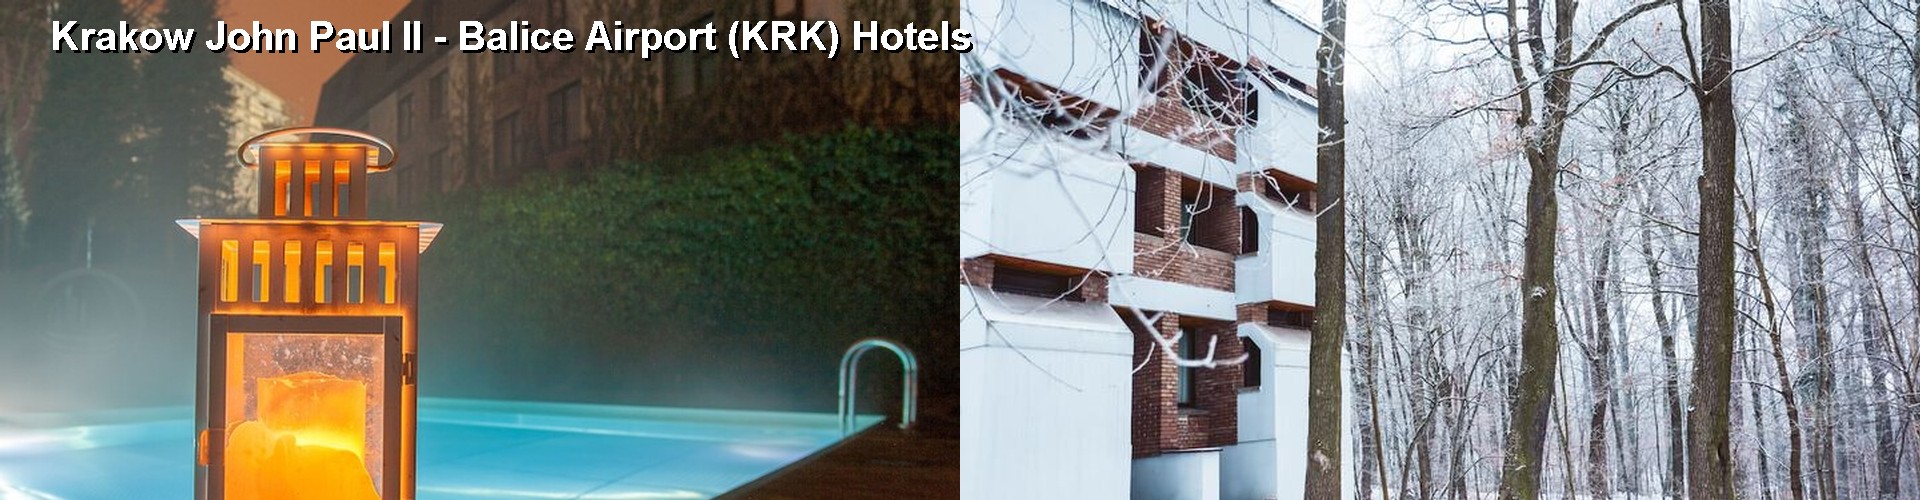 5 Best Hotels near Krakow John Paul II - Balice Airport (KRK)